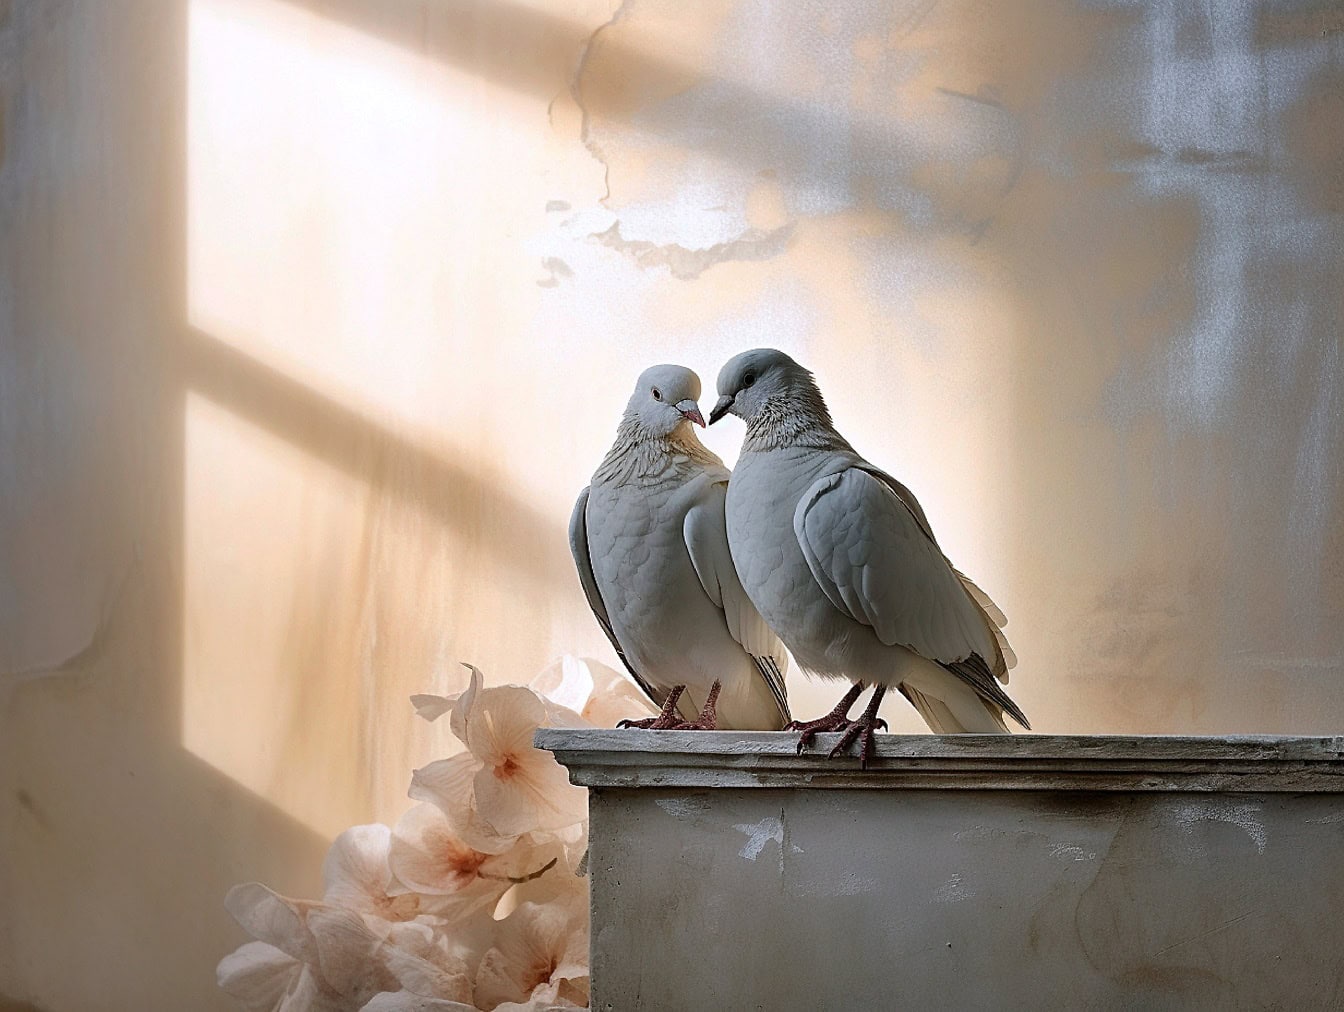 Khung cảnh lãng mạn với chim bồ câu trắng và chim bồ câu đứng trong bóng râm bán phần với những bông hoa màu pastel ở phía sau